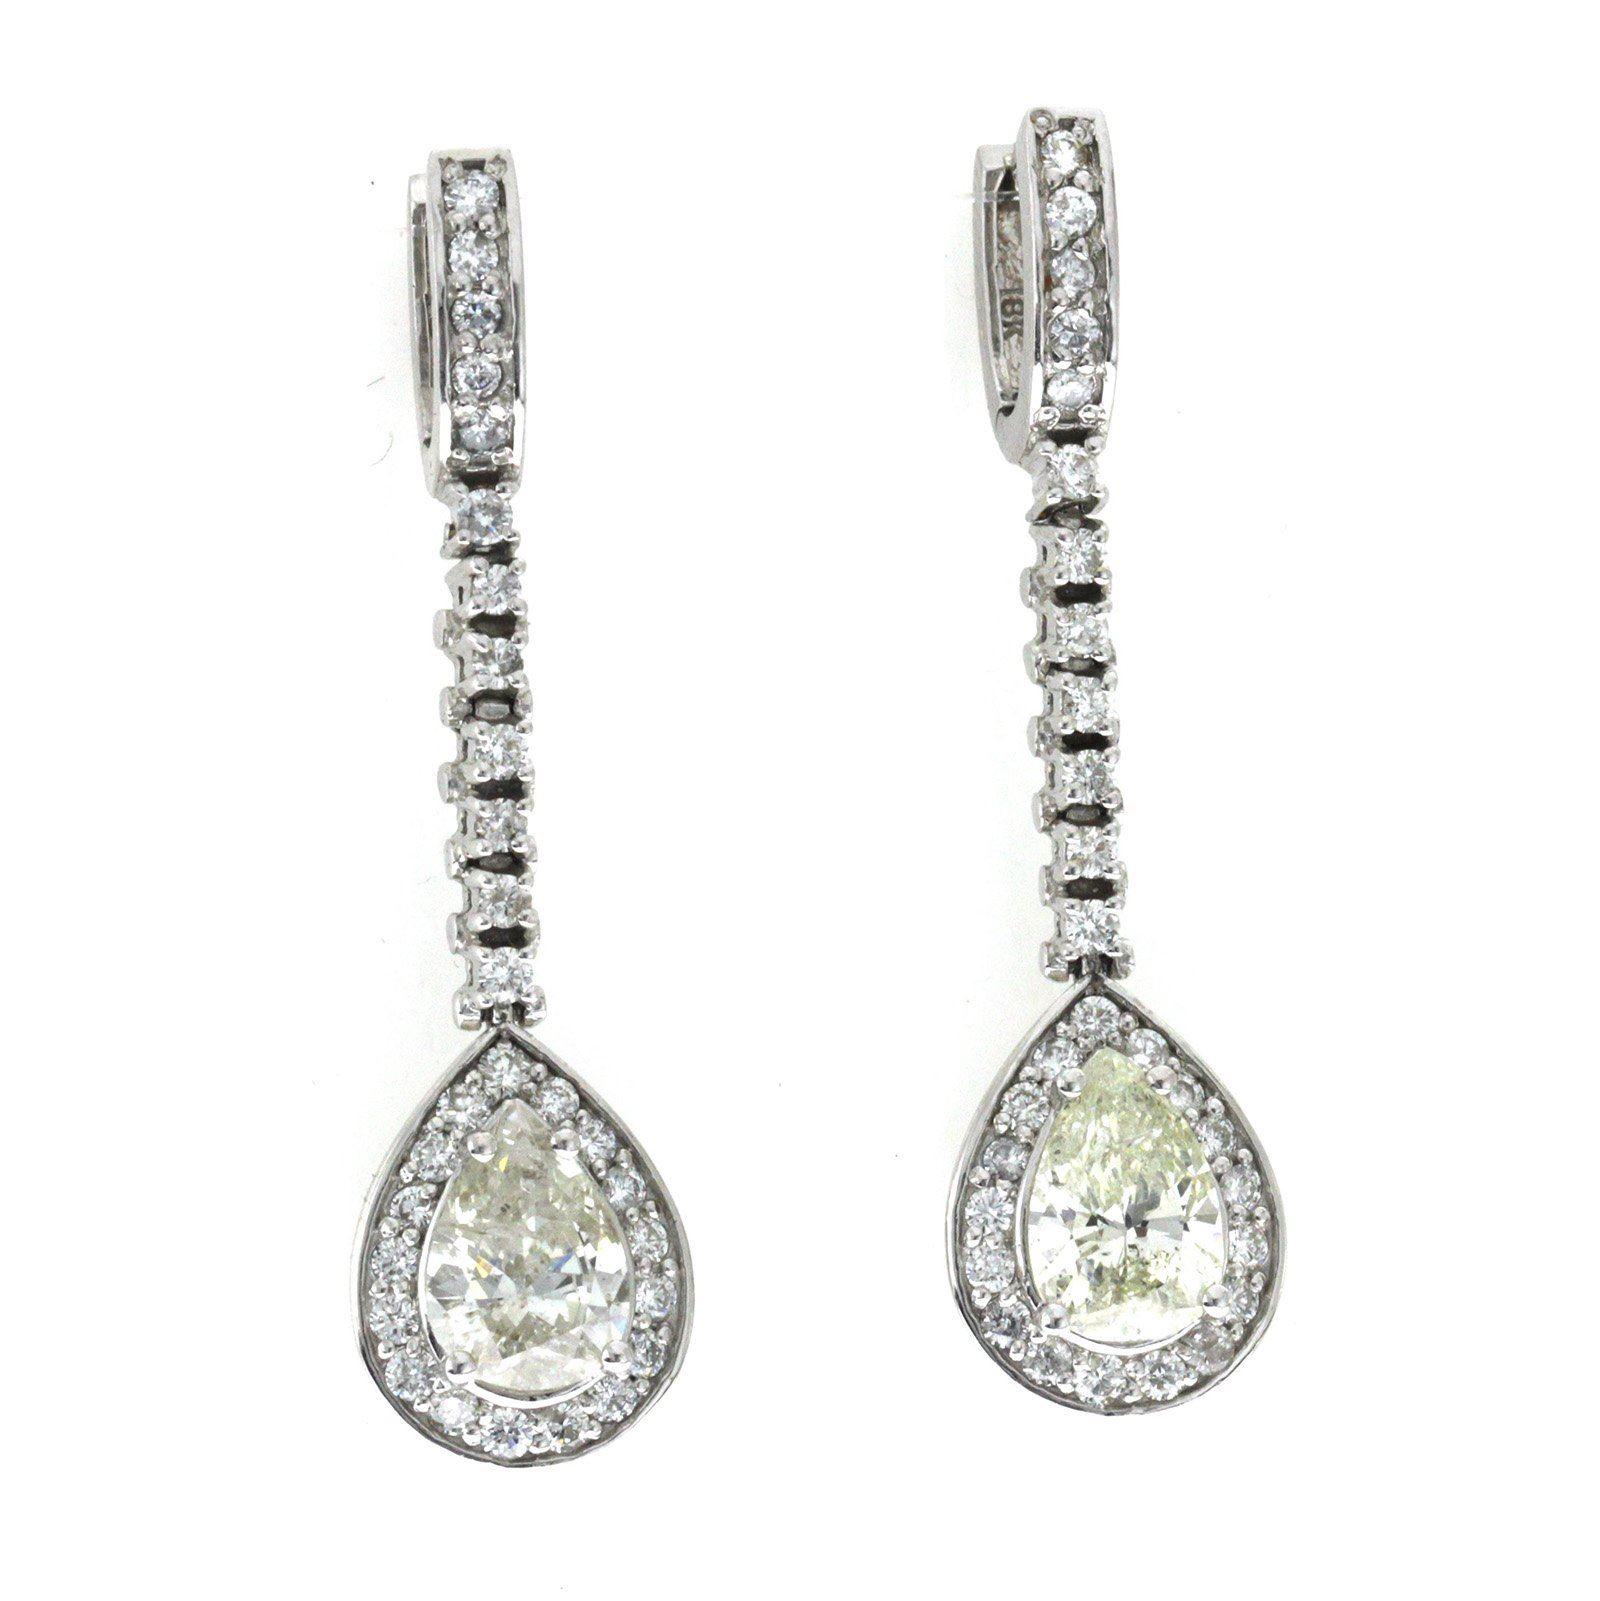 5.10 Carat Diamonds in 18 Karat White Gold Drop Earrings For Sale